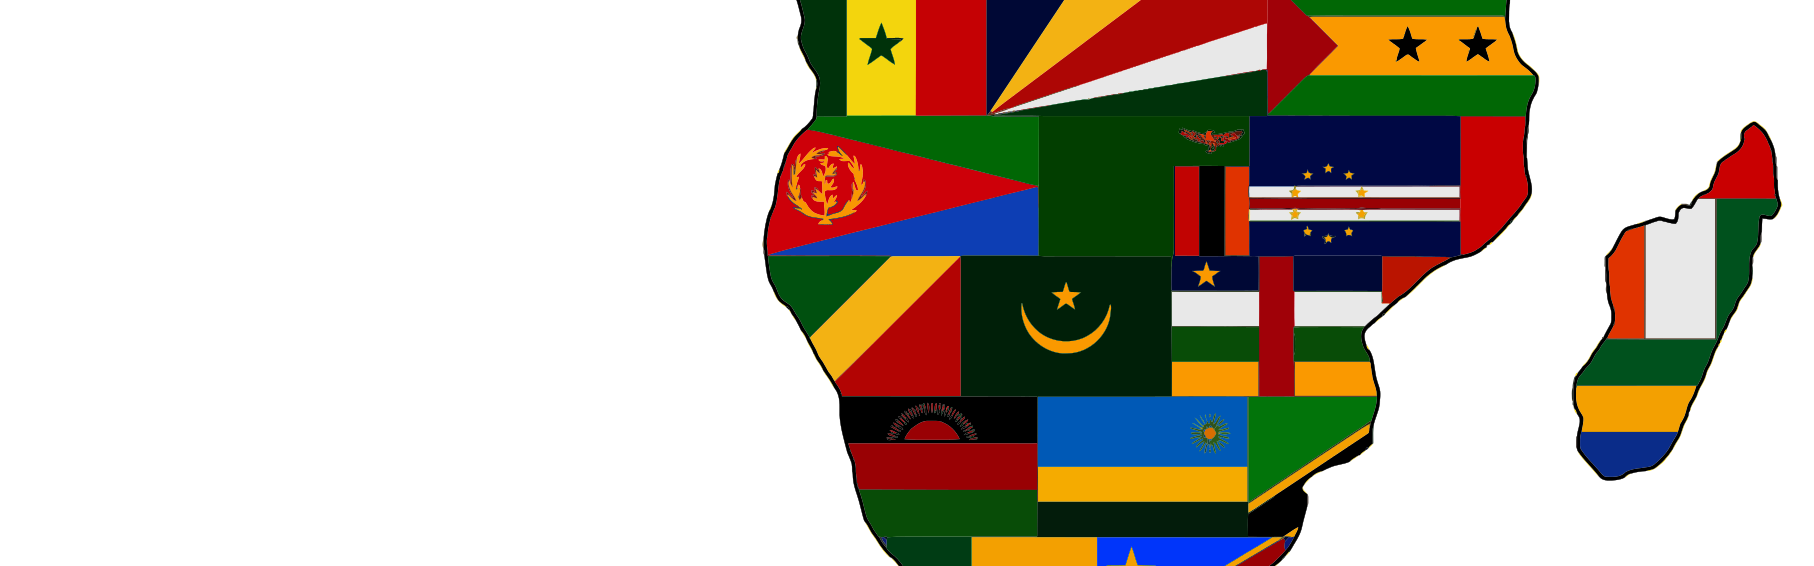 Das Bild zeigt den afrikanischen Kontinent mit den Flaggen aller afrikanischen Länder